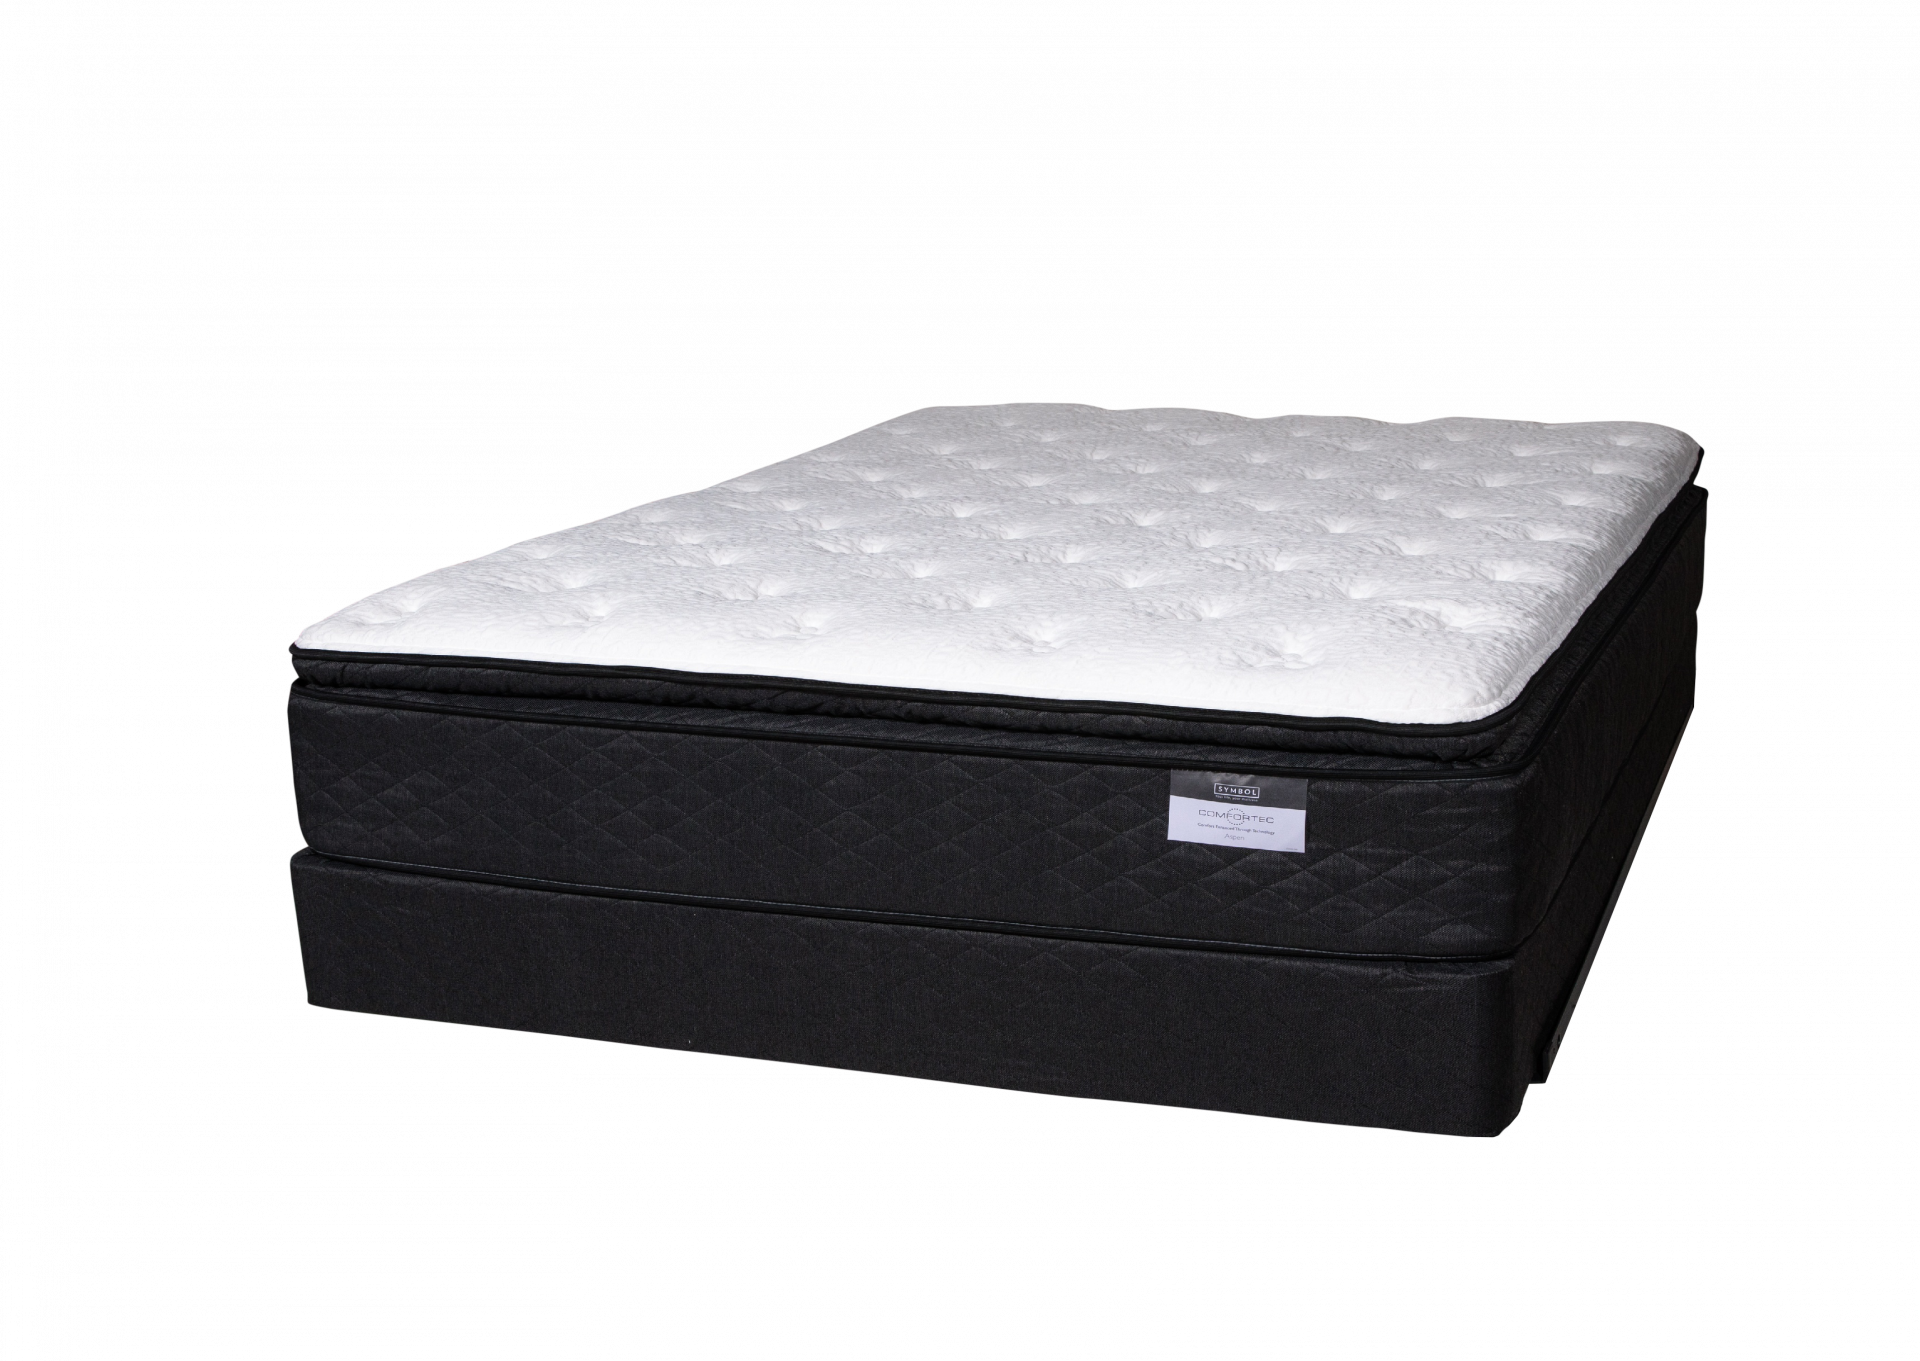 Aspen Pillow Top Queen size mattress set by Symbol Mattress,Symbol Mattress